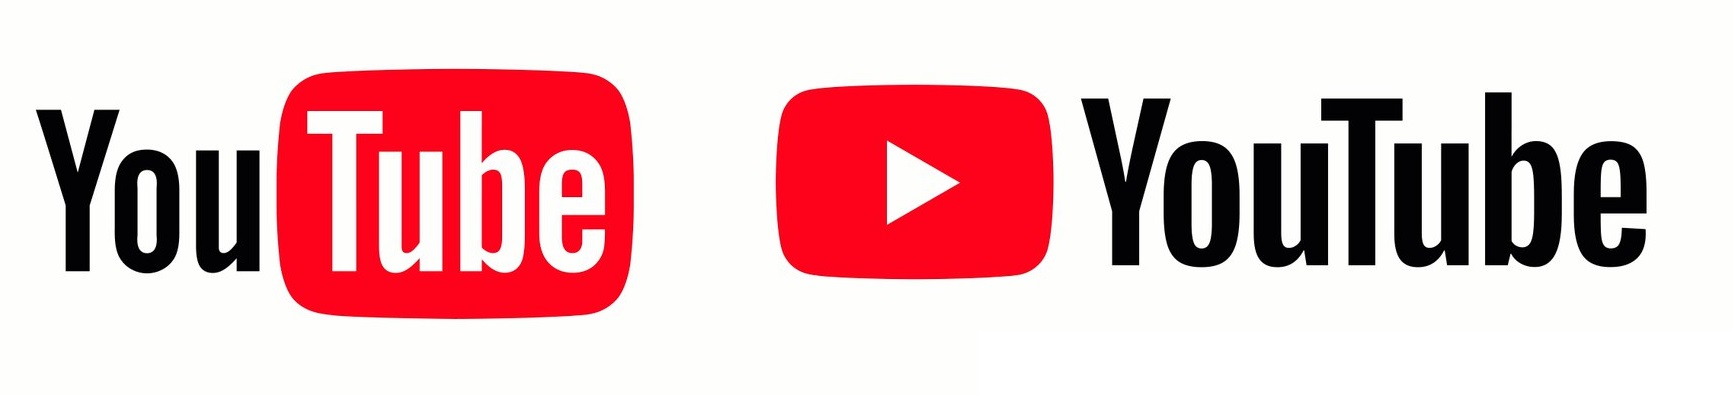 Представлен новый логотип YouTube и новый дизайн